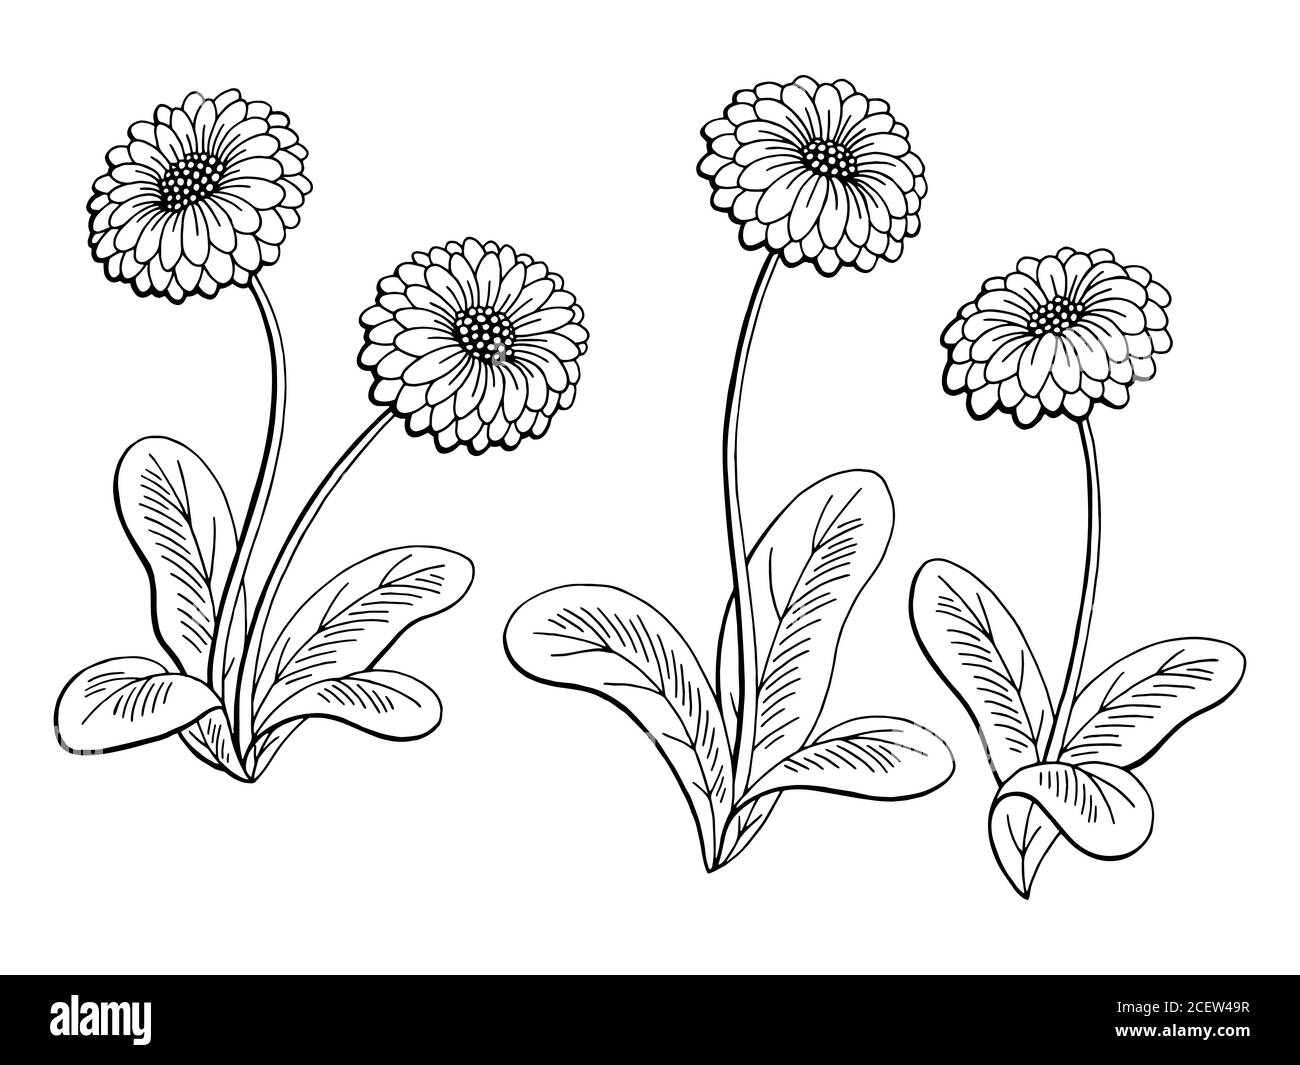 Immagine grafica daisy flower bianco nero isolato vettore di illustrazione dello schizzo Illustrazione Vettoriale